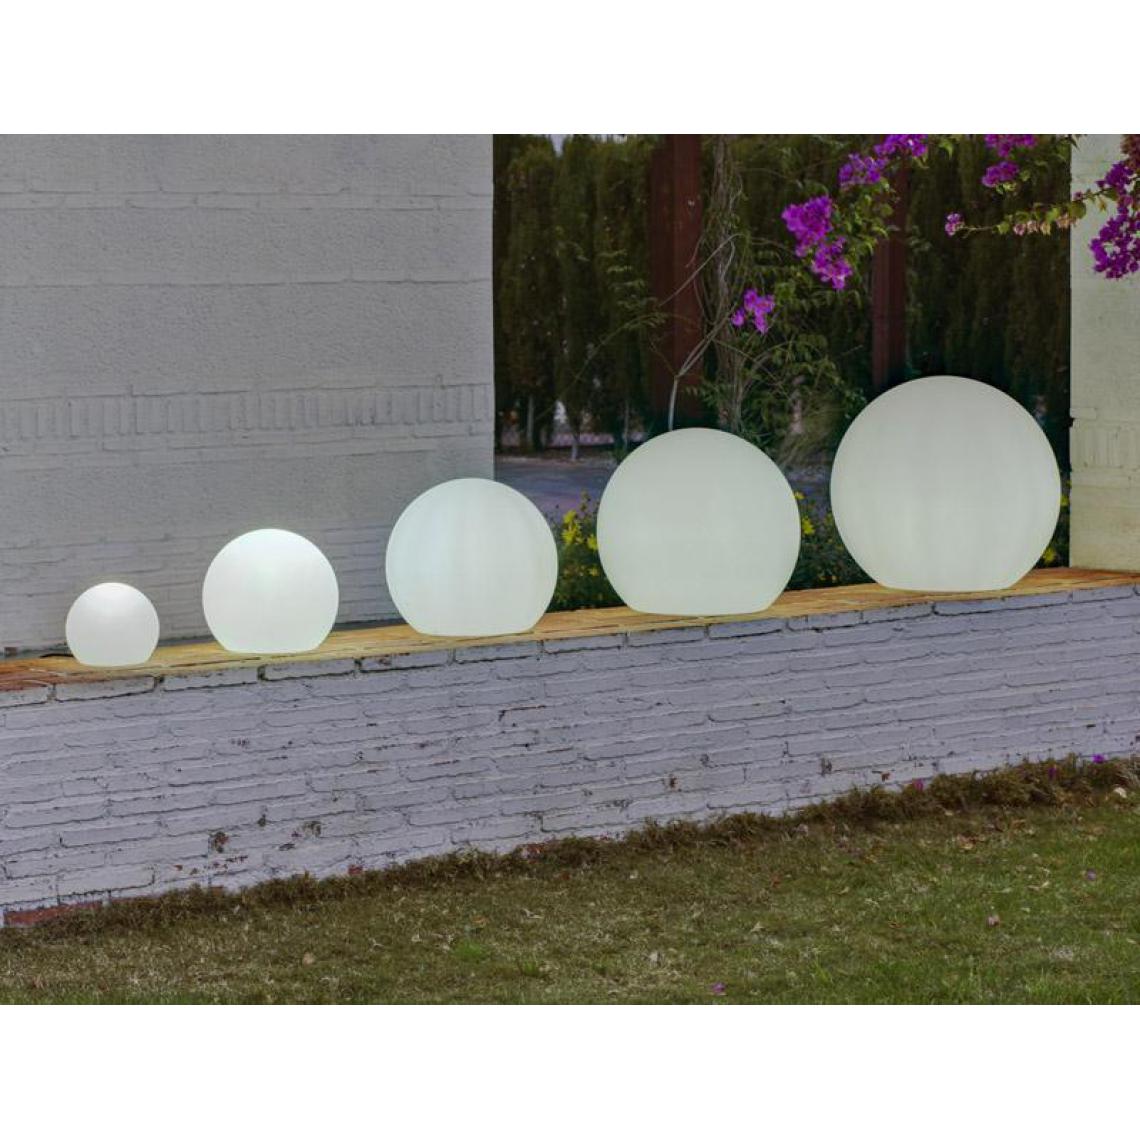 New Garden - Boule sphère lumineuse NEWGARDEN 20cm automático (Solaire+capteur crépusculaire) - Eclairage solaire